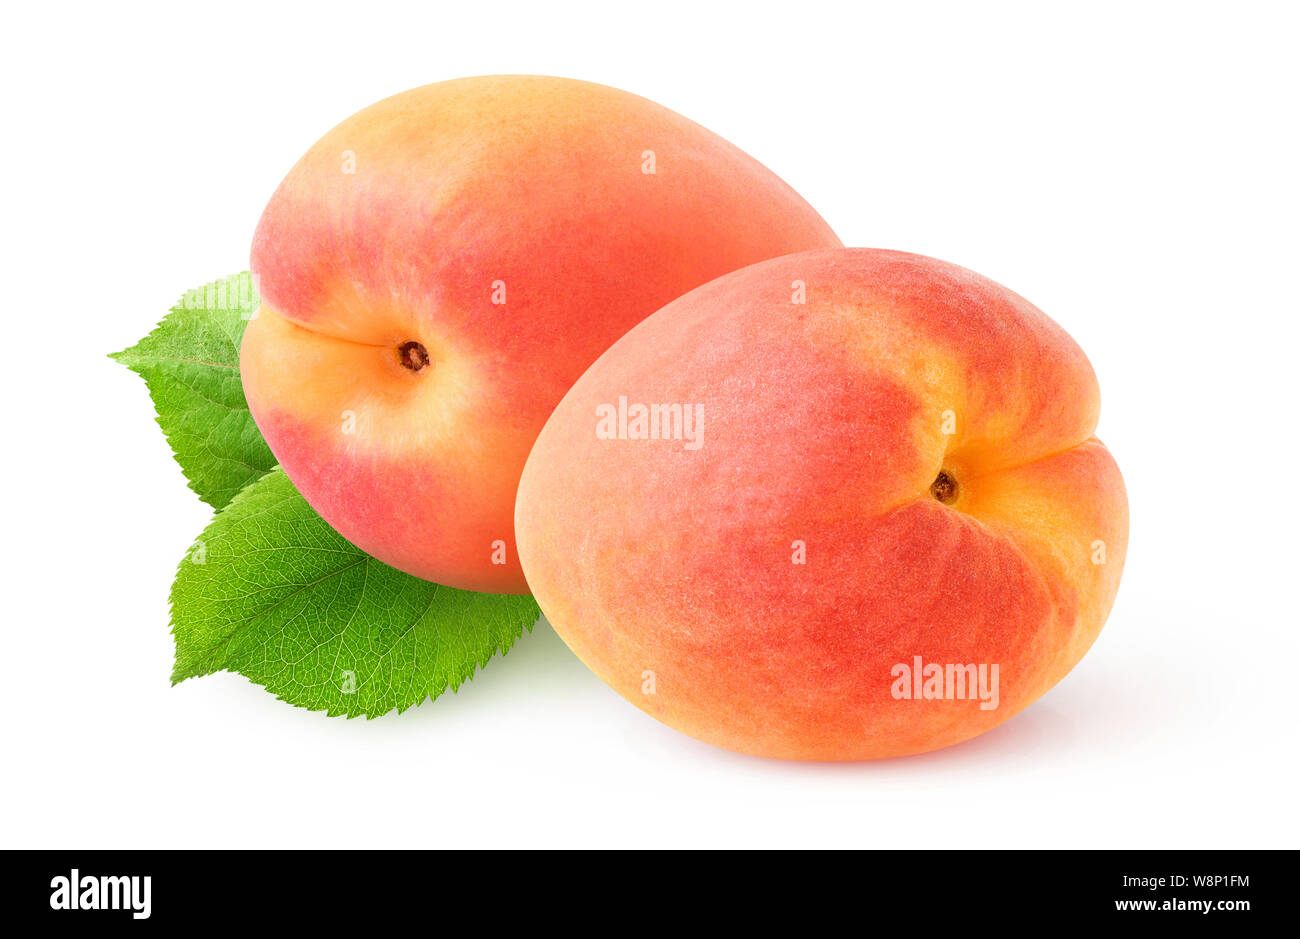 Deux fruits abricot rose plus de feuilles isolées sur fond blanc avec clipping path Banque D'Images